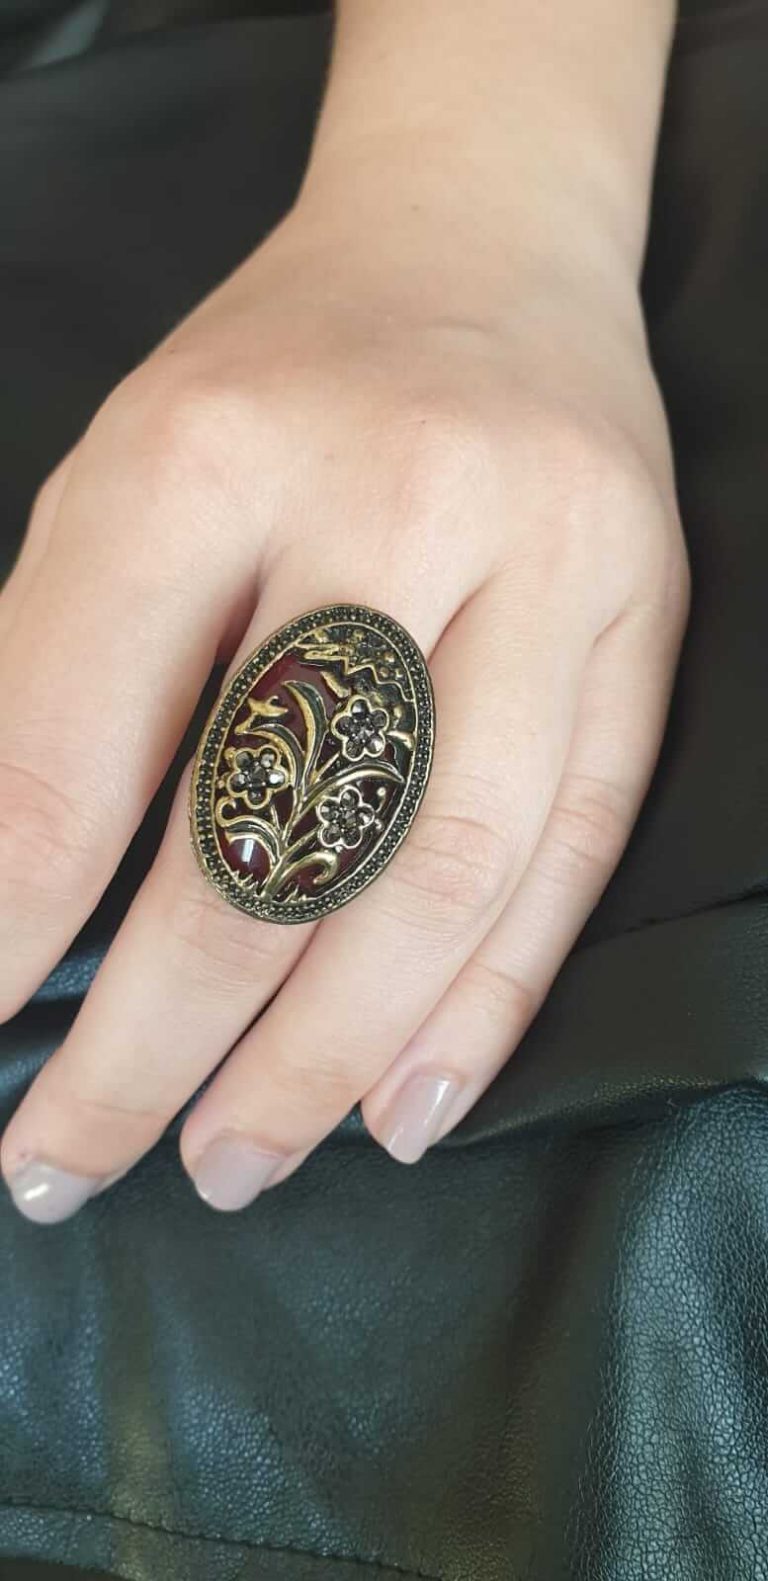 La bague romaine antique couleur bordeaux pour femme est un bijou intemporel ottoman